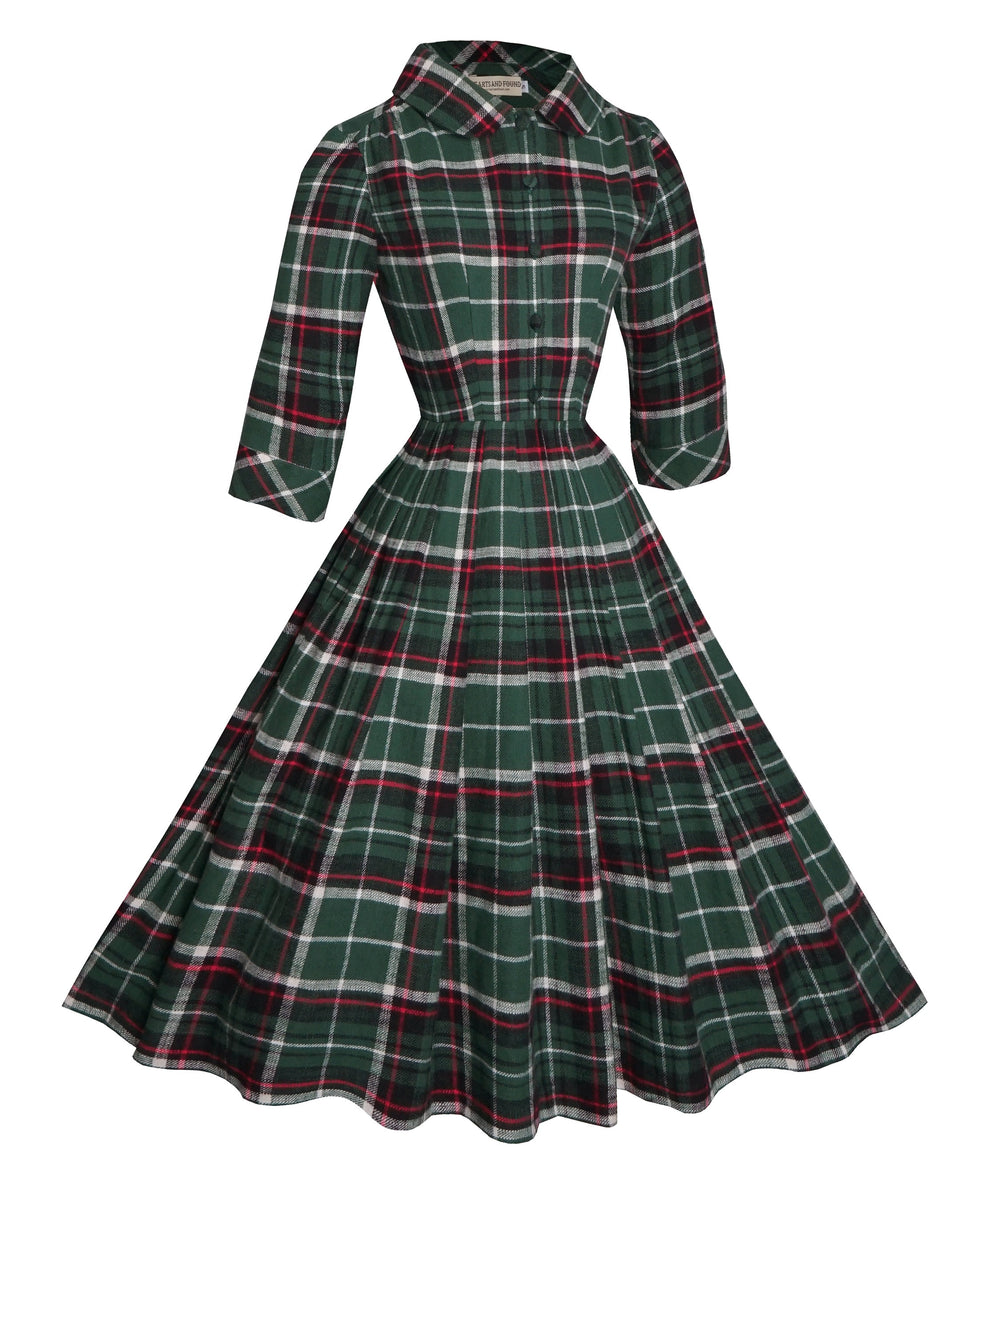 RTS - Size M - Wendy Dress "Norwich Plaid"